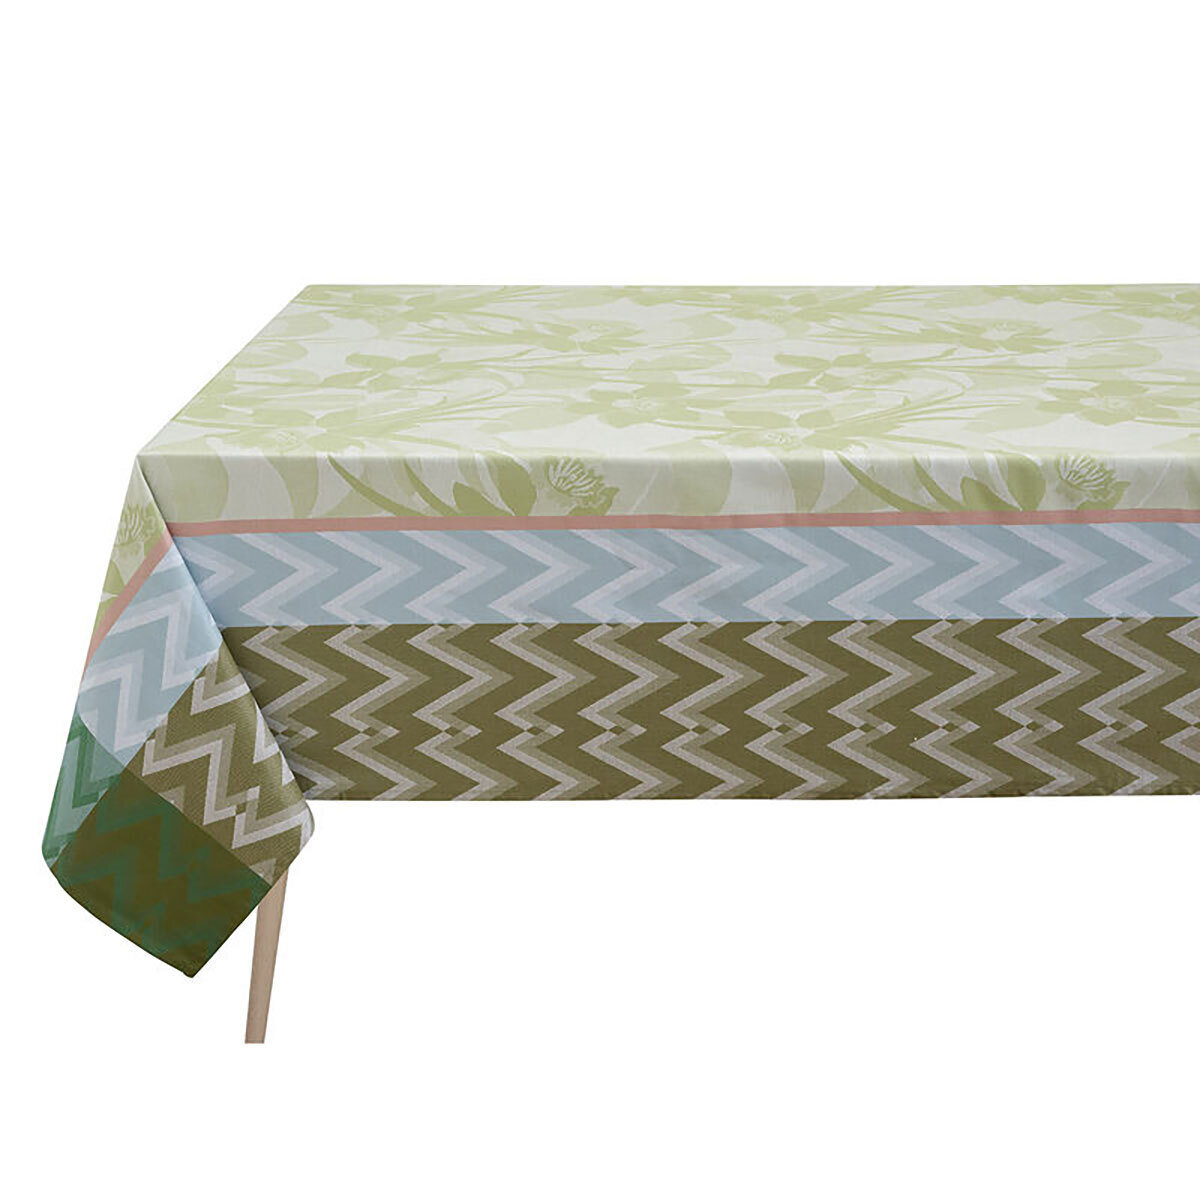 Le Jacquard Francais La Vie En Vosges Green Coated Tablecloth 69 x 69 Inch 27484